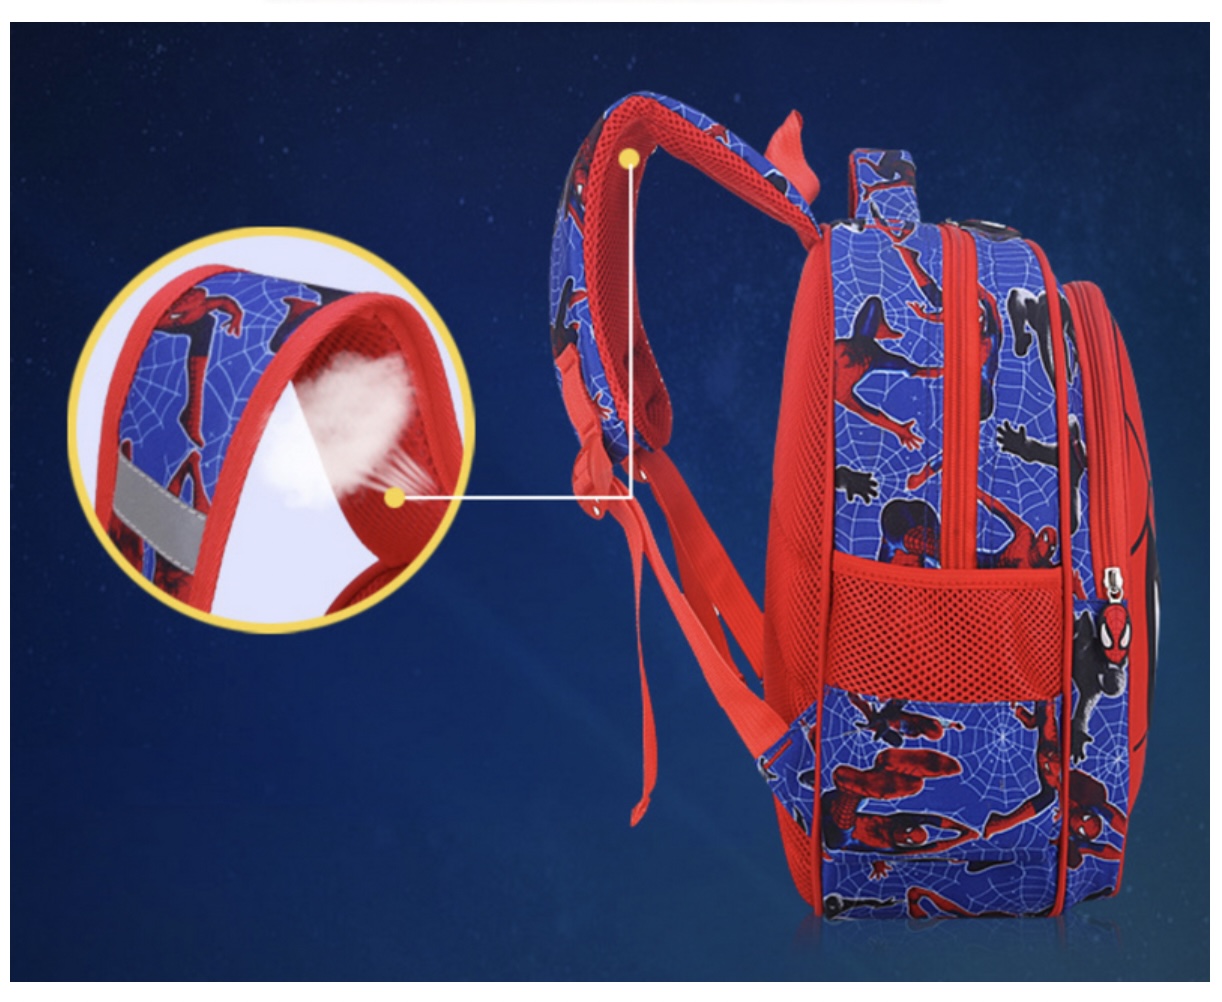 Balo người nhện Shoulder Bag SpiderKids